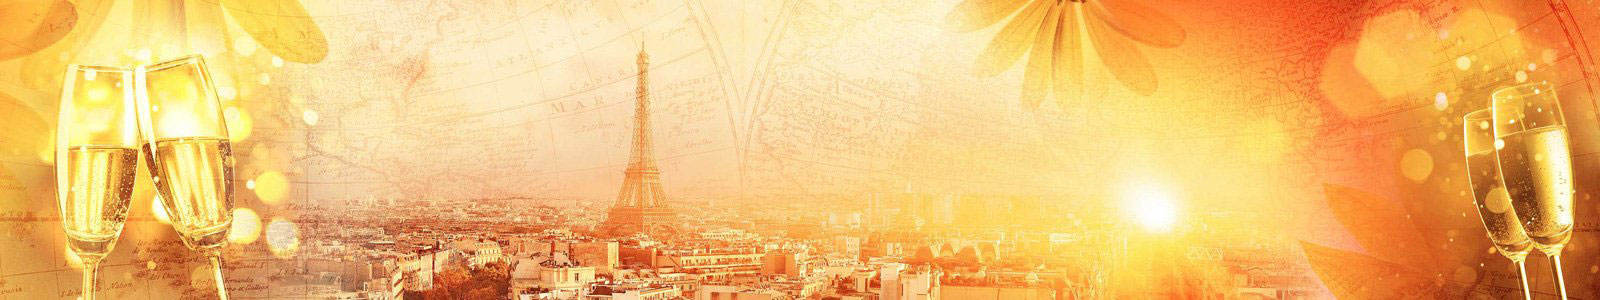 №6379 - Коллаж панорамы Парижа на закате